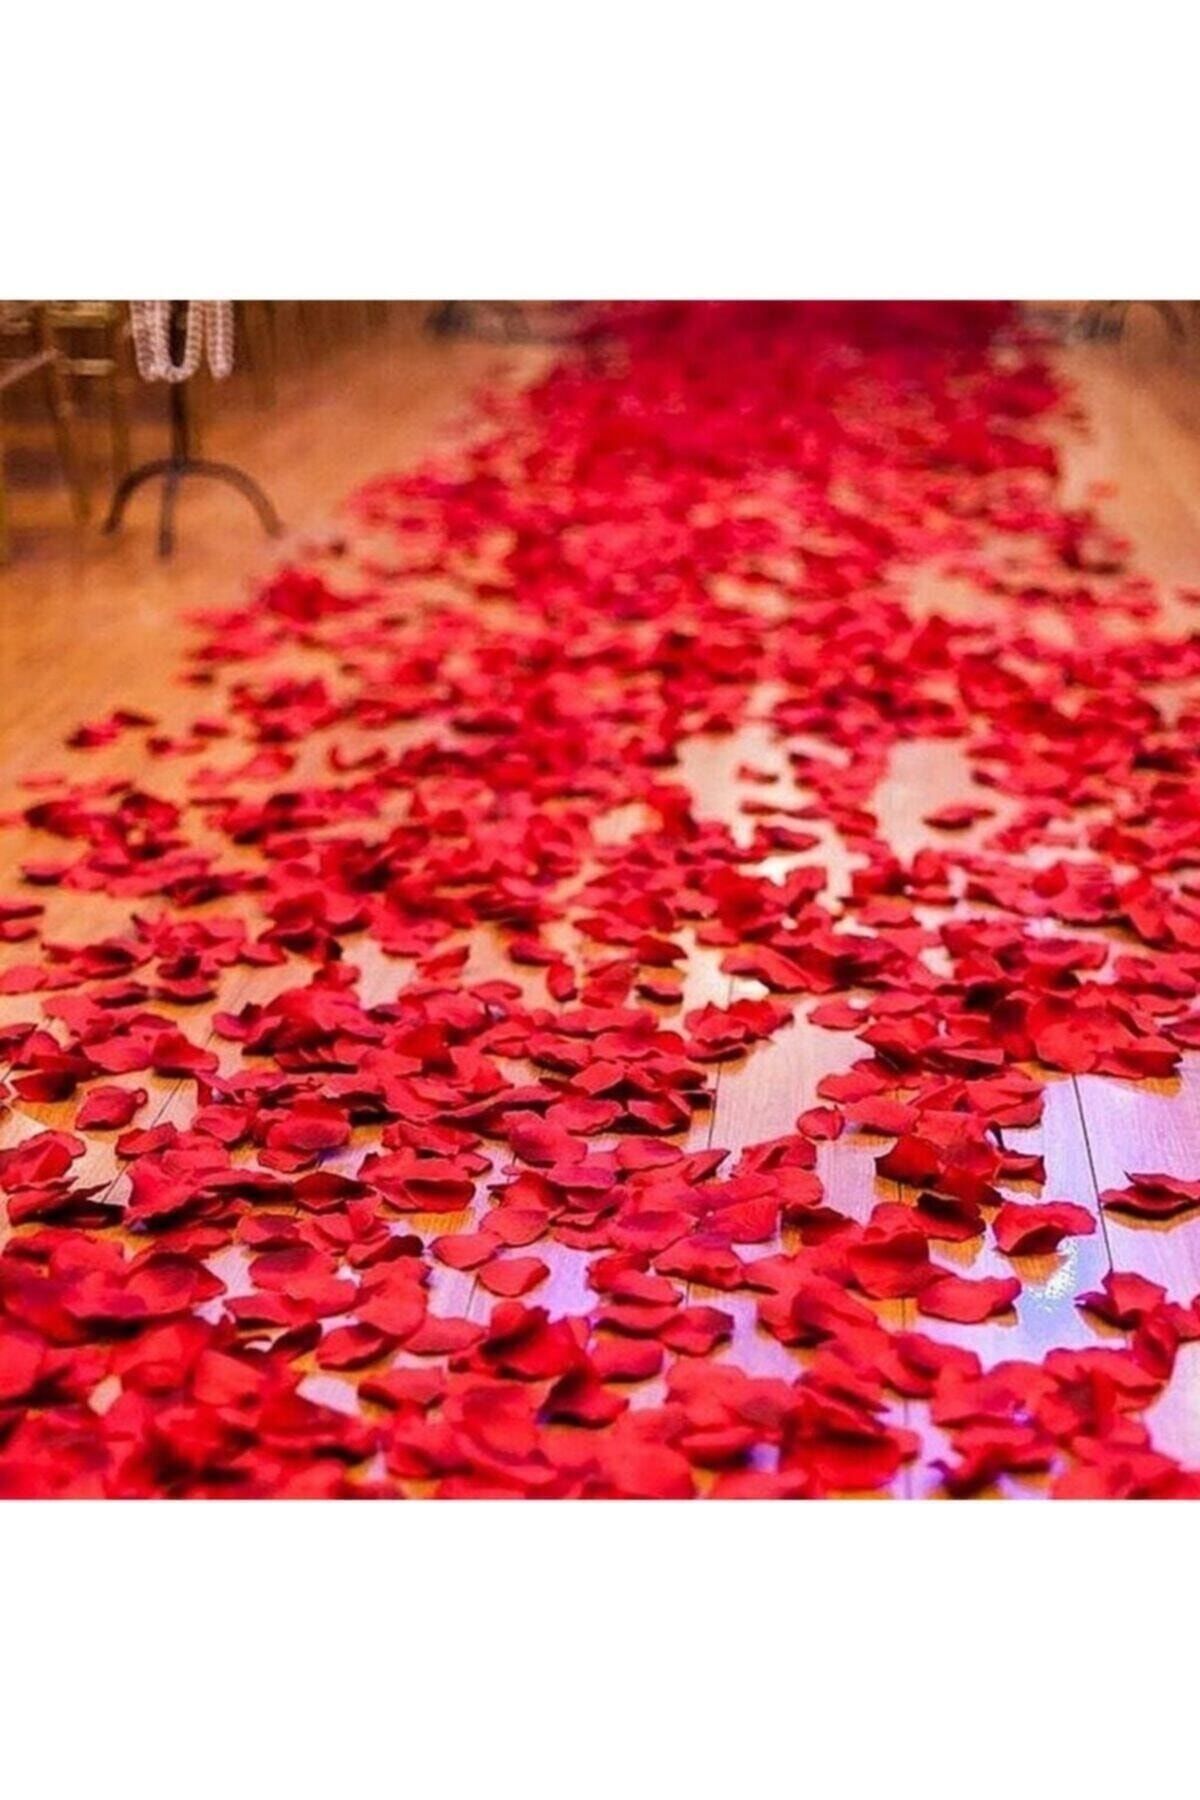 Partini Seç Dekoratif Kırmızı Yapay Gül Yaprakları, Romantik Süsleme Malzemesi 500 Adet